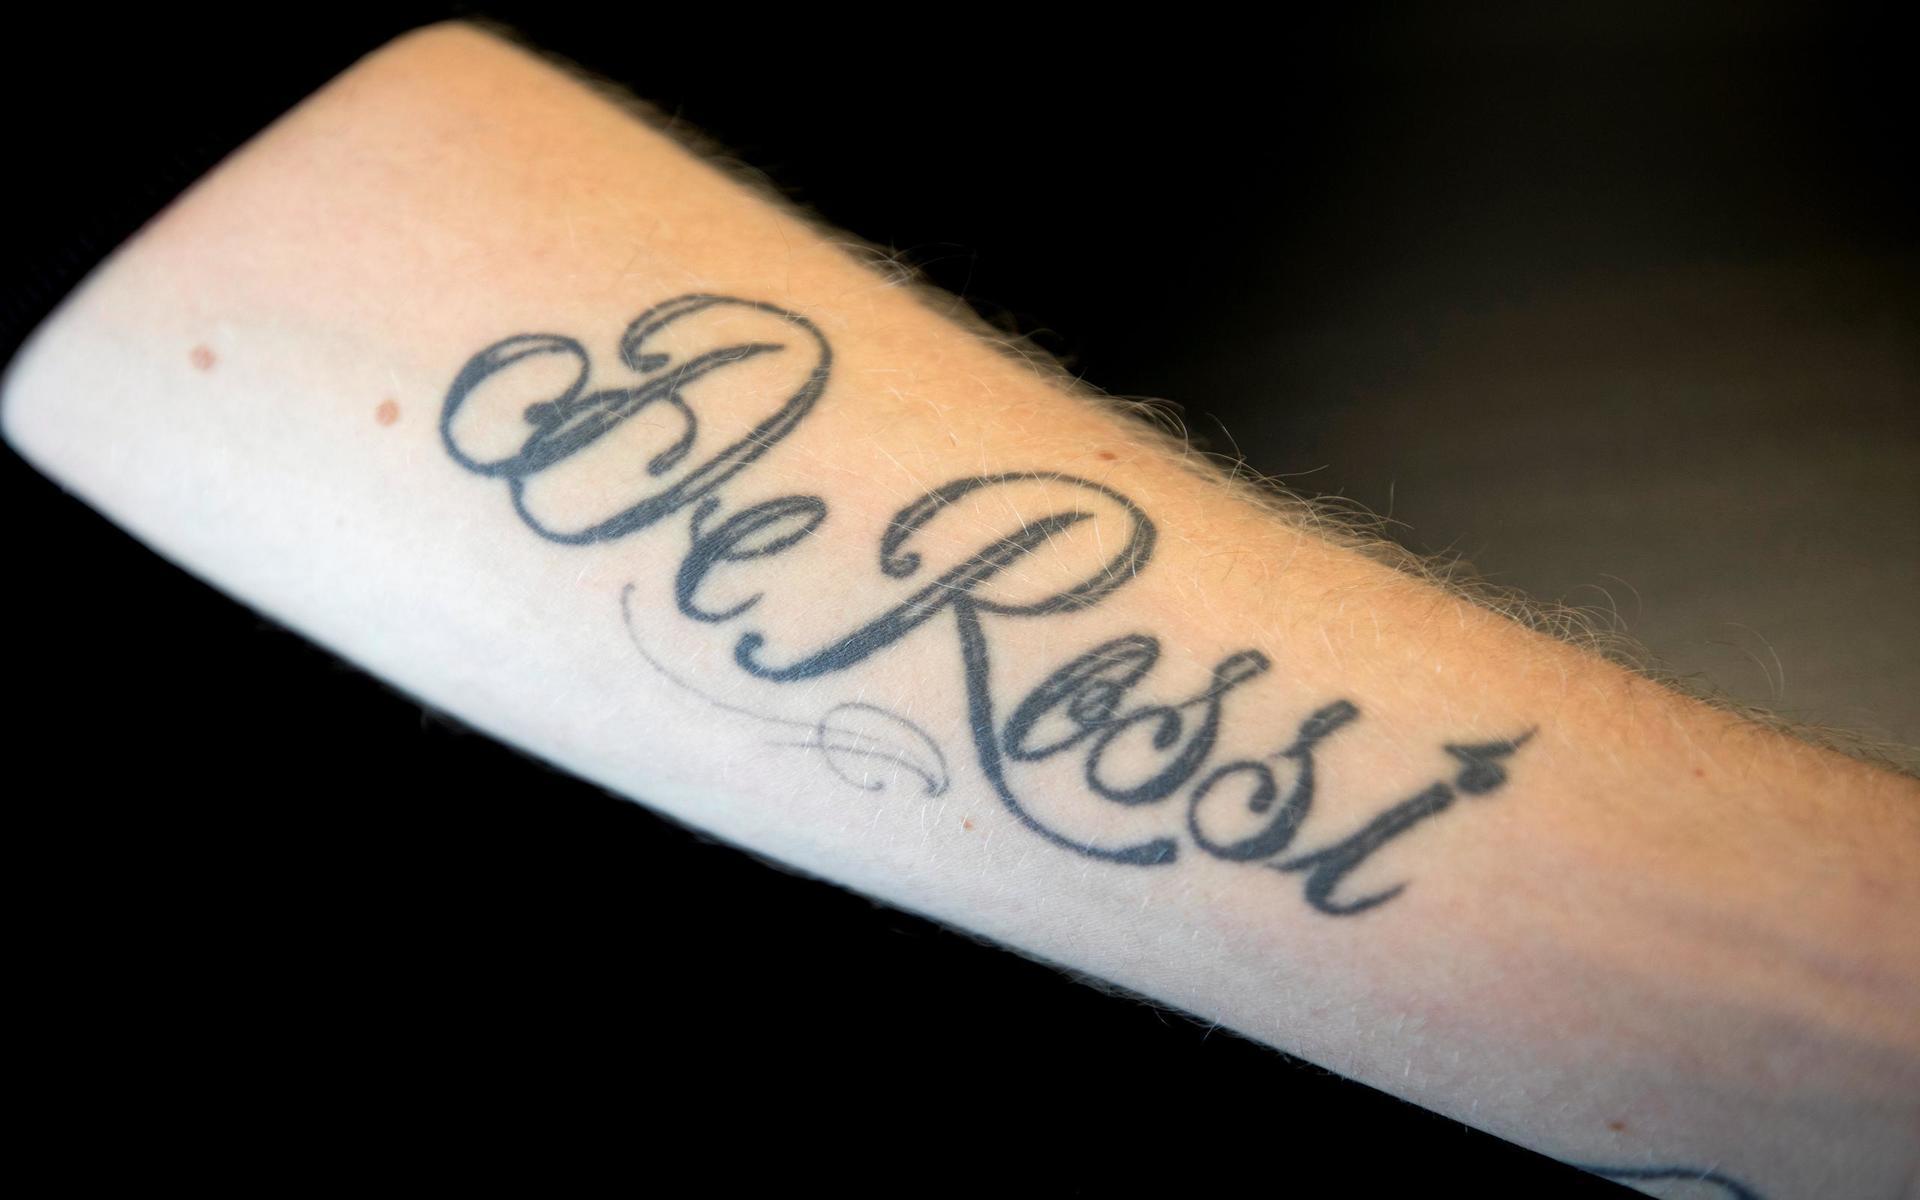 Idolens efternamn var den första tatuering som 22-åringen skaffade sig.